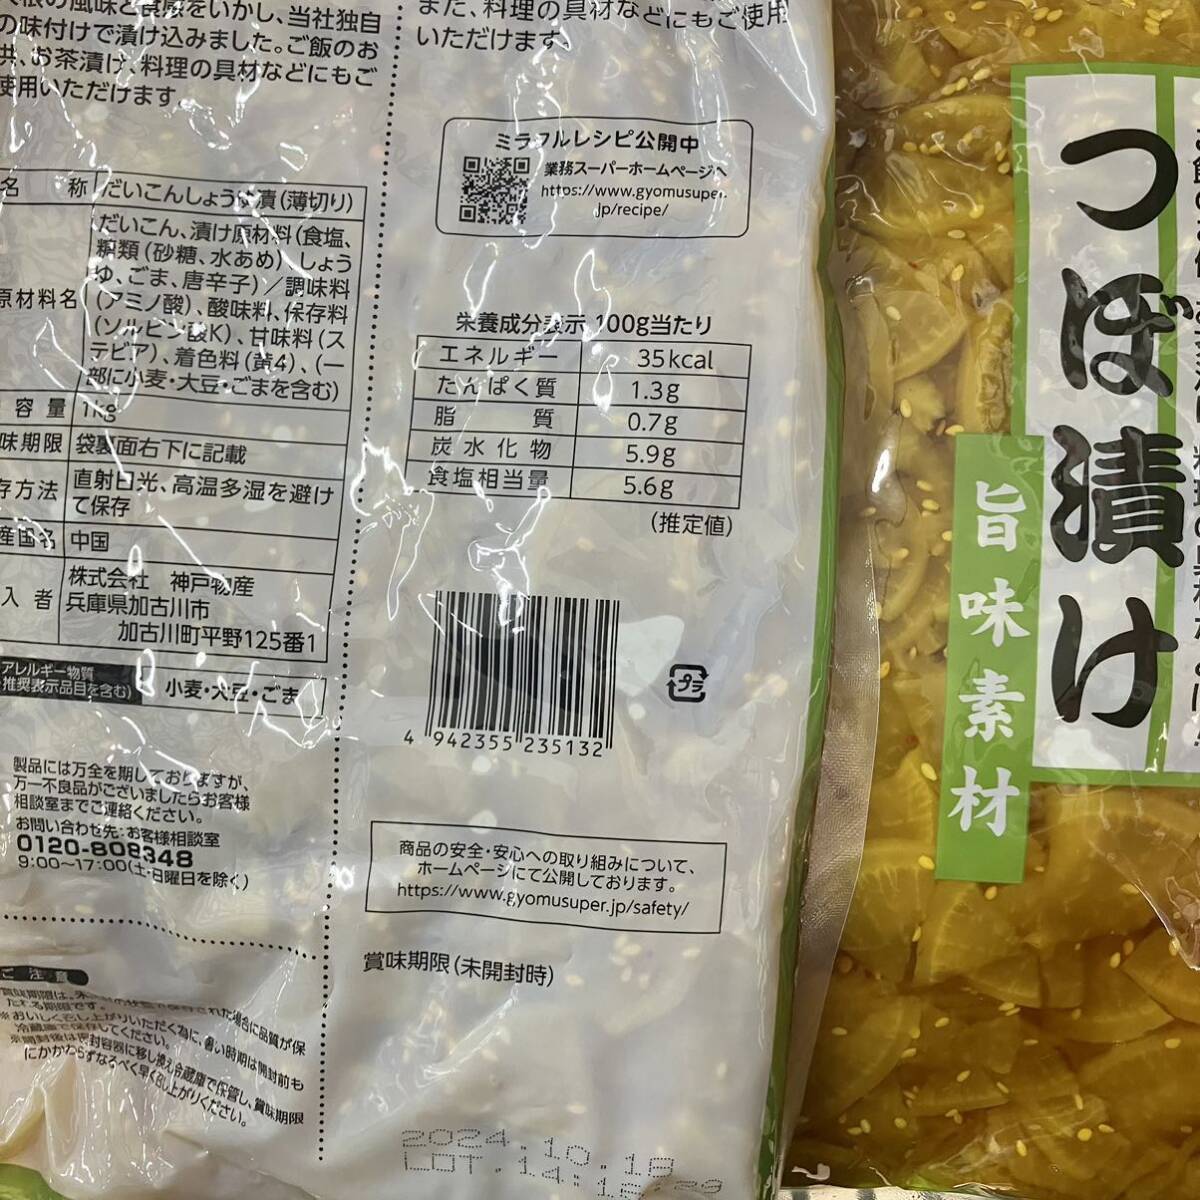 tsu...1kg большая вместимость для бизнеса дайкон. . солености tsukemono рис. .. рисовый шарик онигири. . материал кулинария. . материал палочки для еды .. гарнир один товар маленькая миска .. данный закуска .